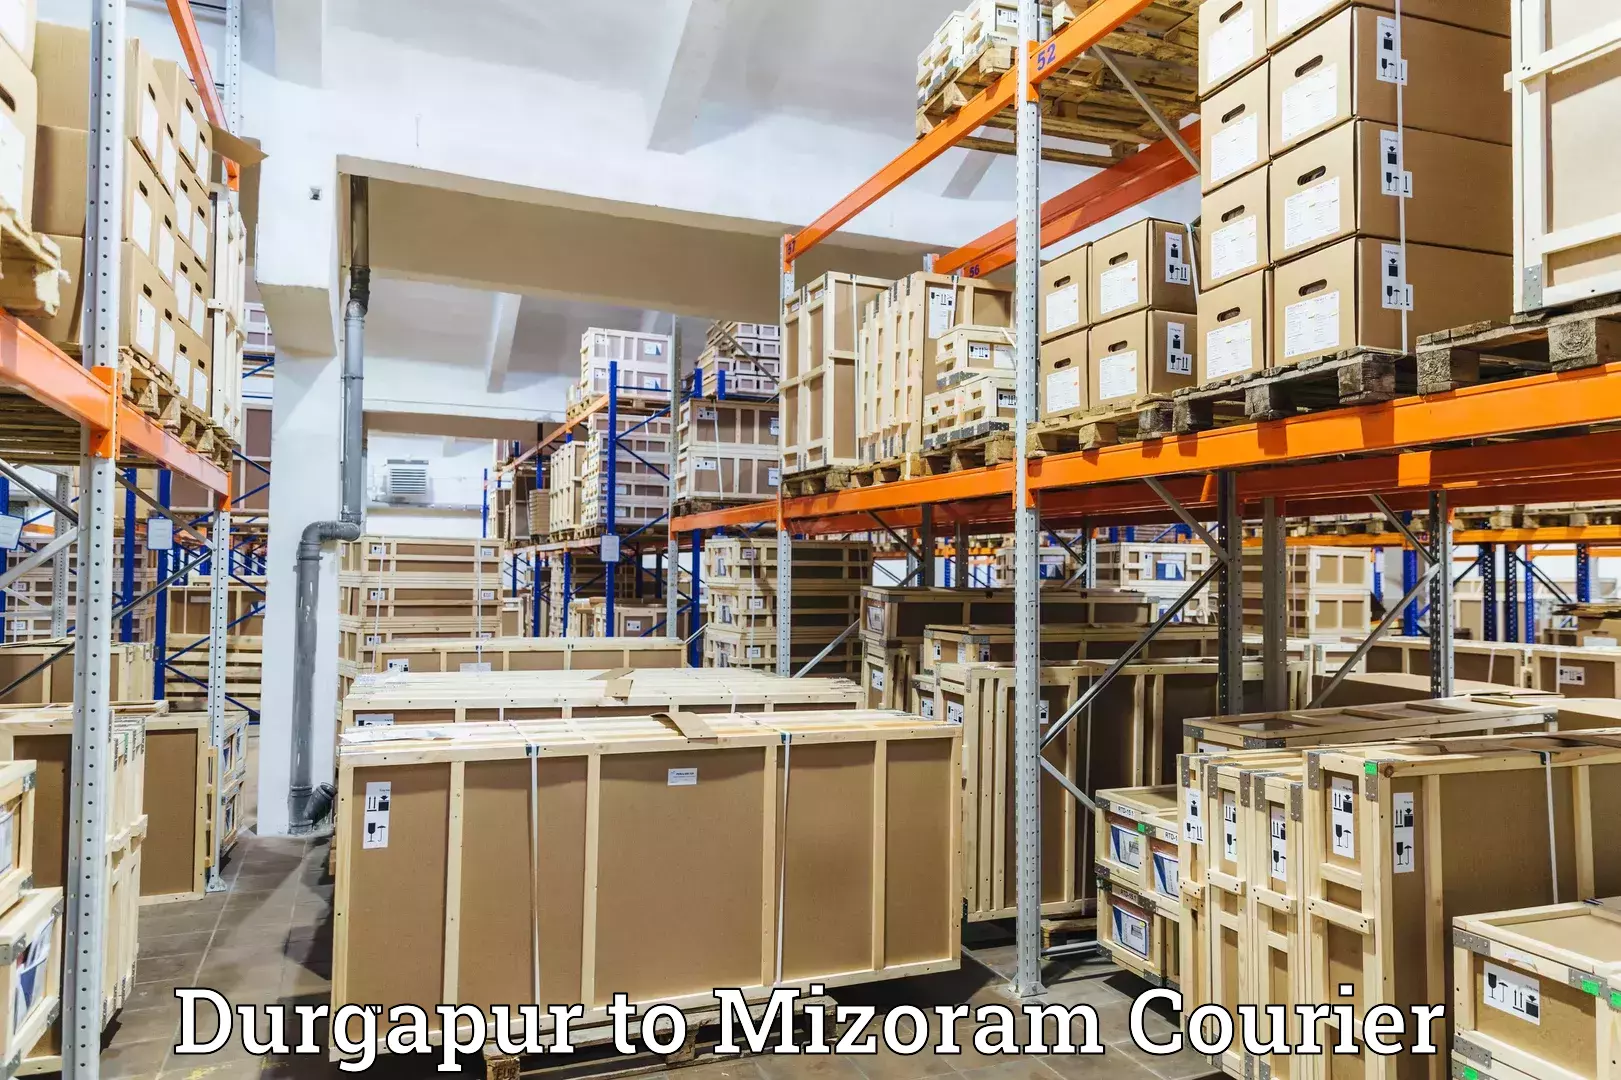 Courier service comparison Durgapur to Kolasib